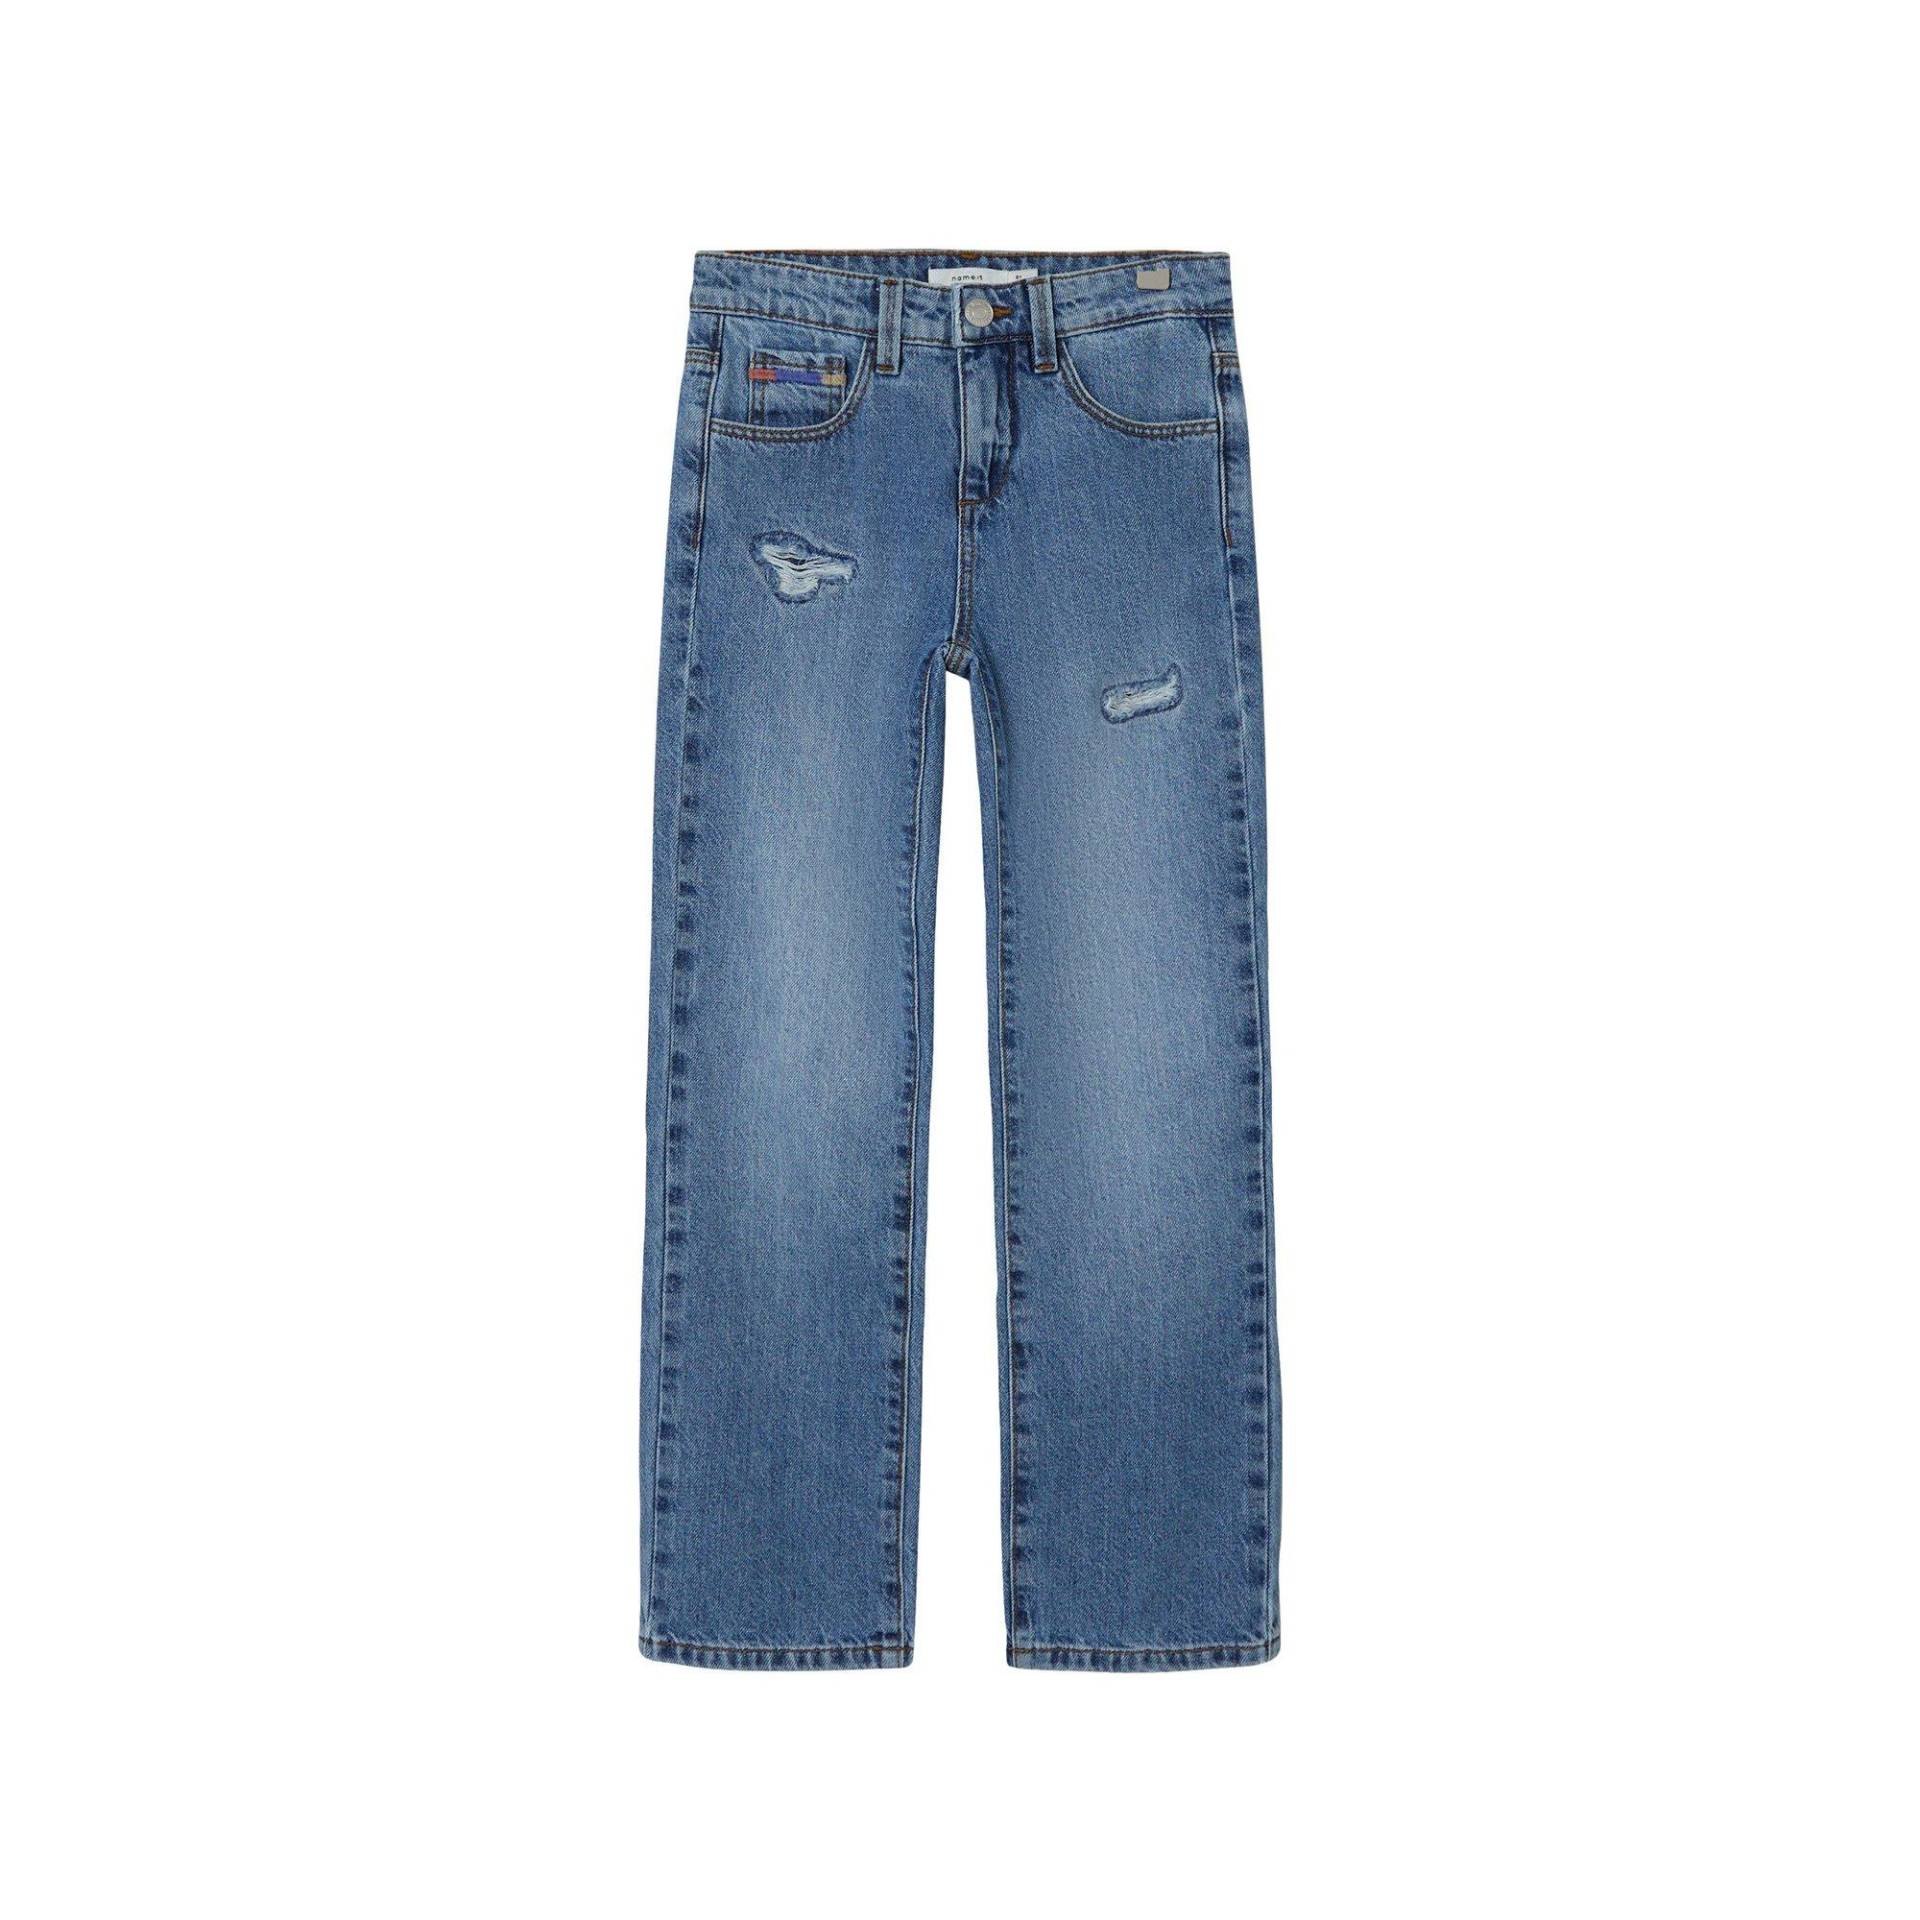 Jeans, Straight Leg Fit Mädchen Blau Denim 134 von Name It